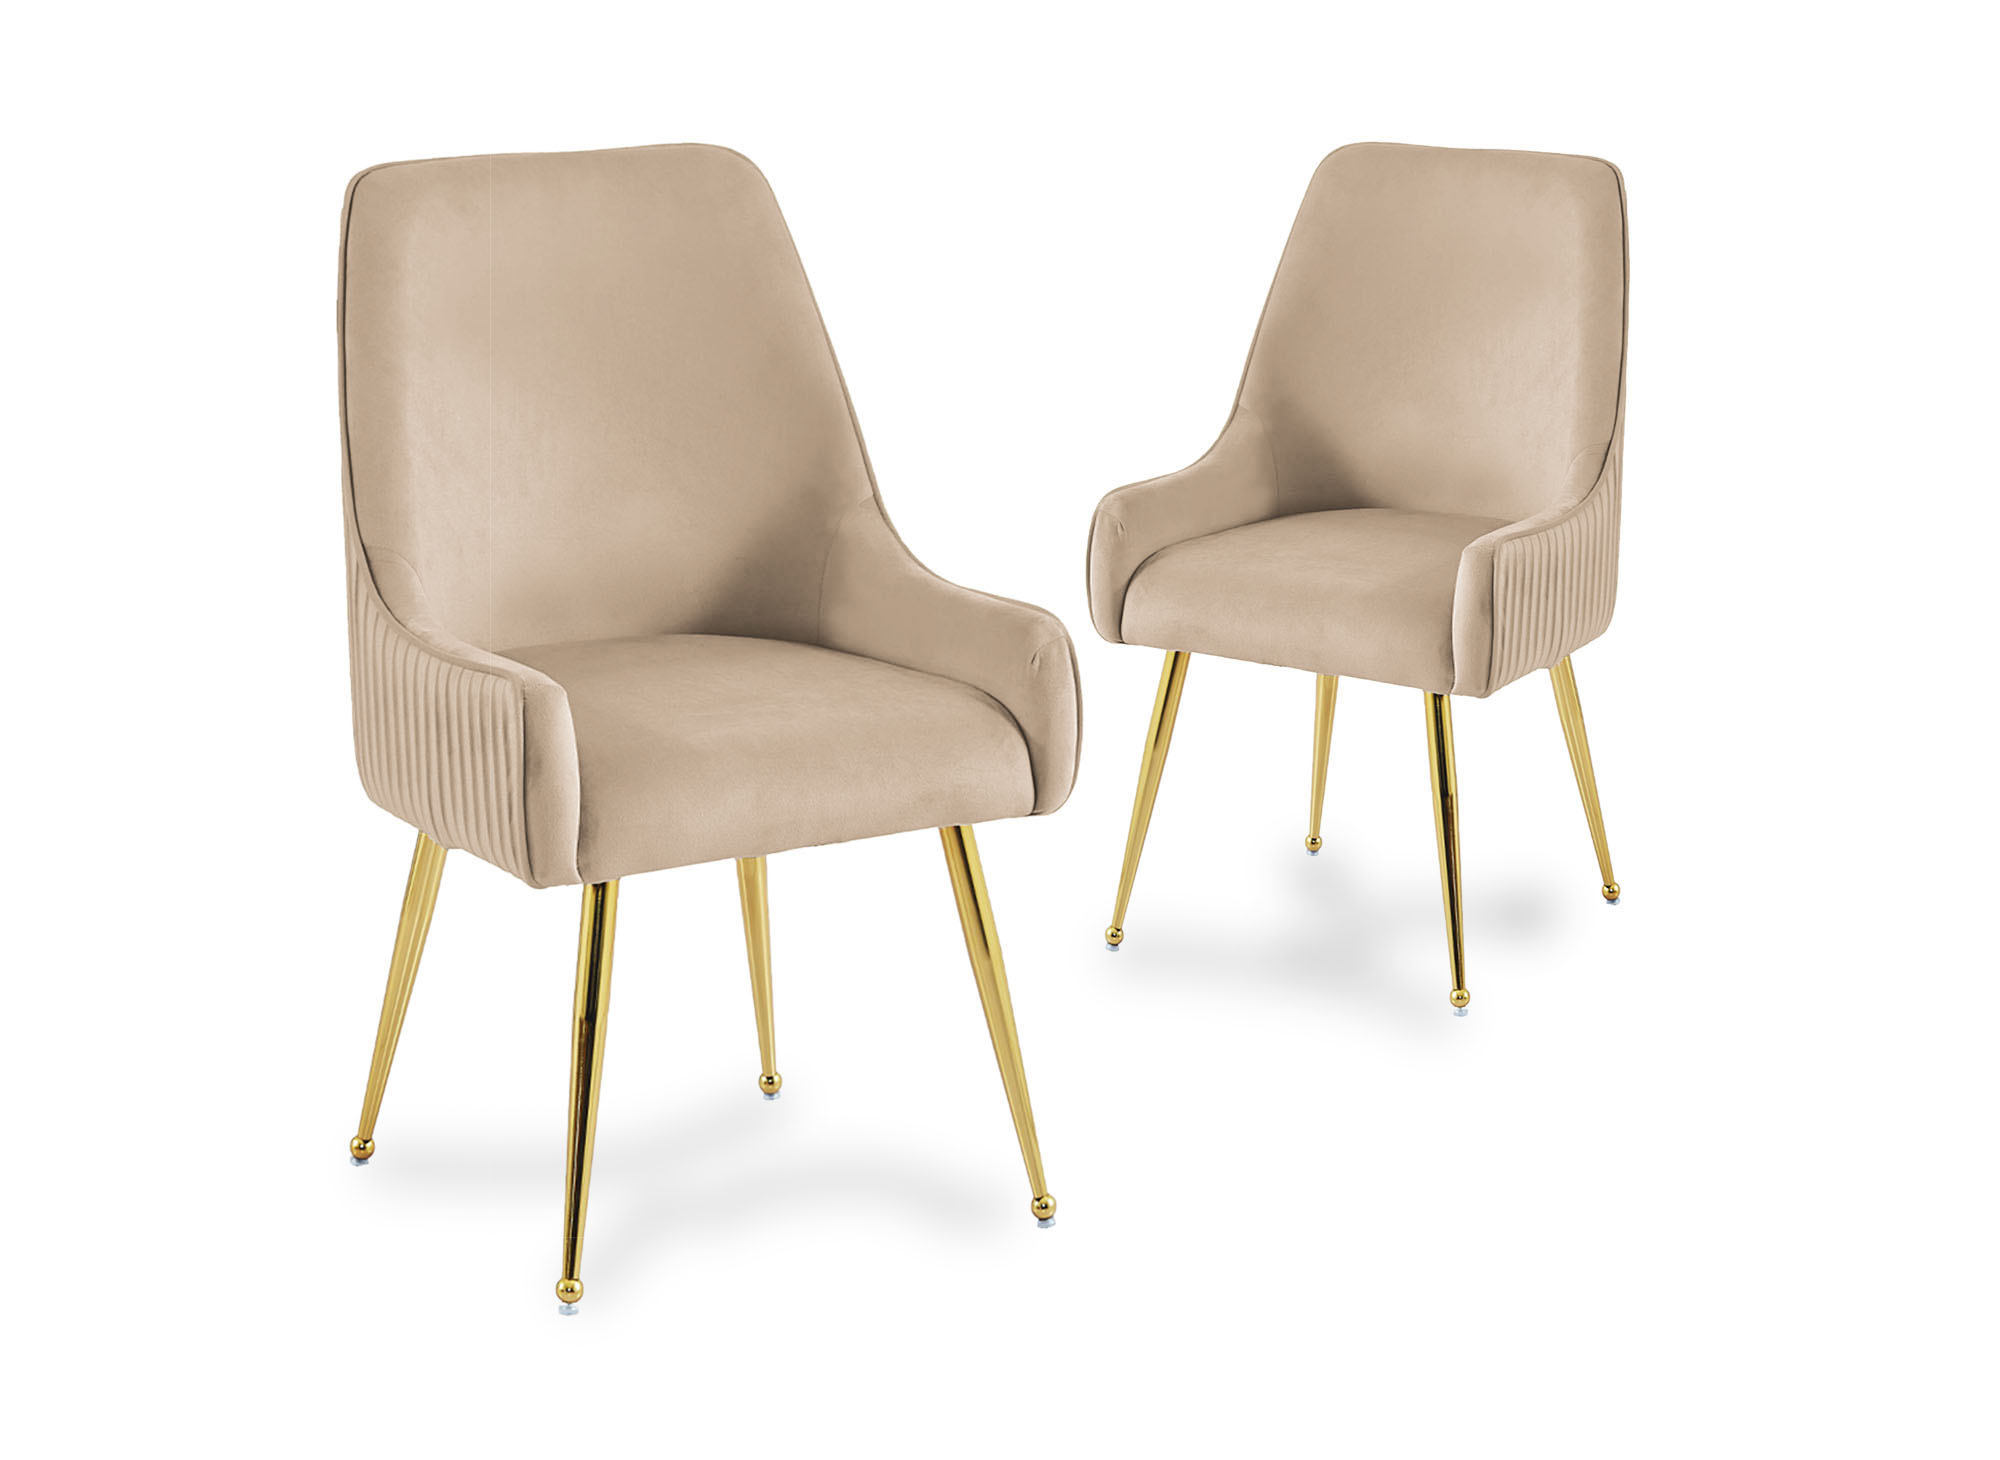 Meublissime | Lot de 2 chaises design velours beige et pieds dorés